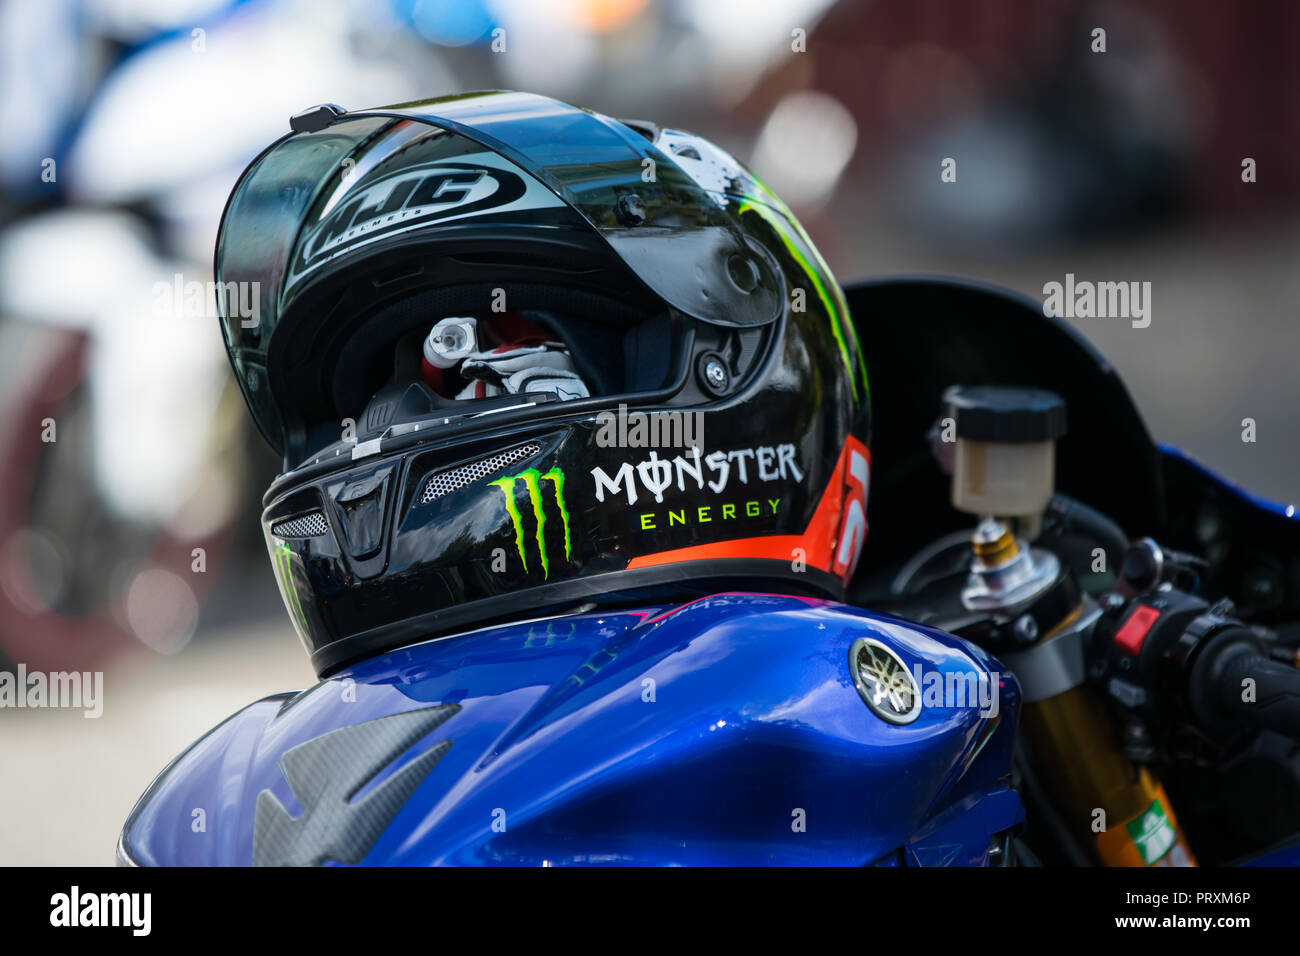 Blick auf die Yamaha R1 Motorrad Tank und HJC Helm auf liegend mit dem  Monster Energy Werbung Stockfotografie - Alamy